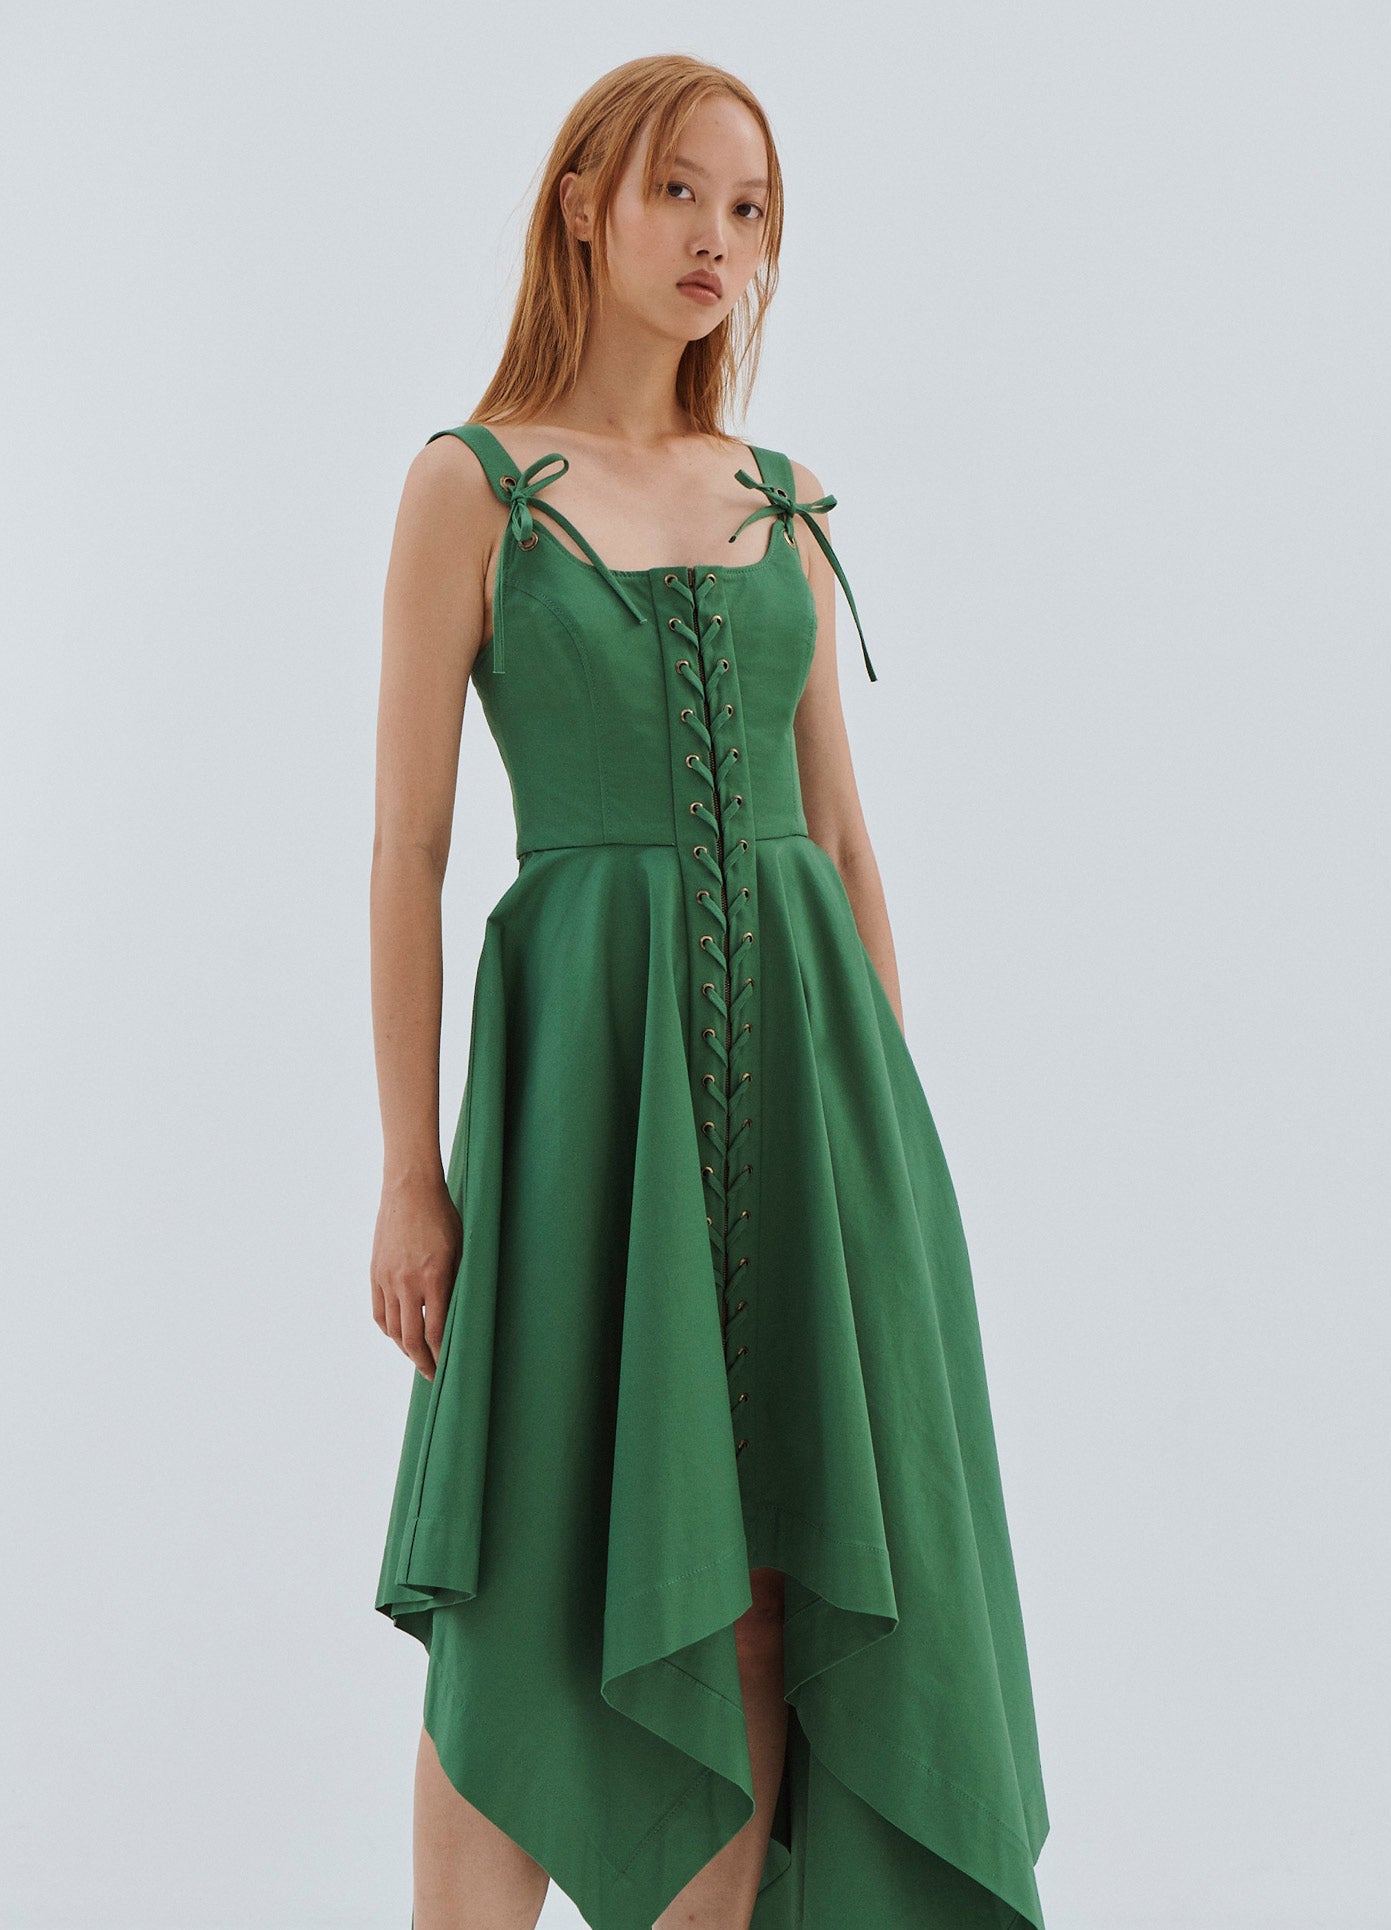 green sleeveless dress